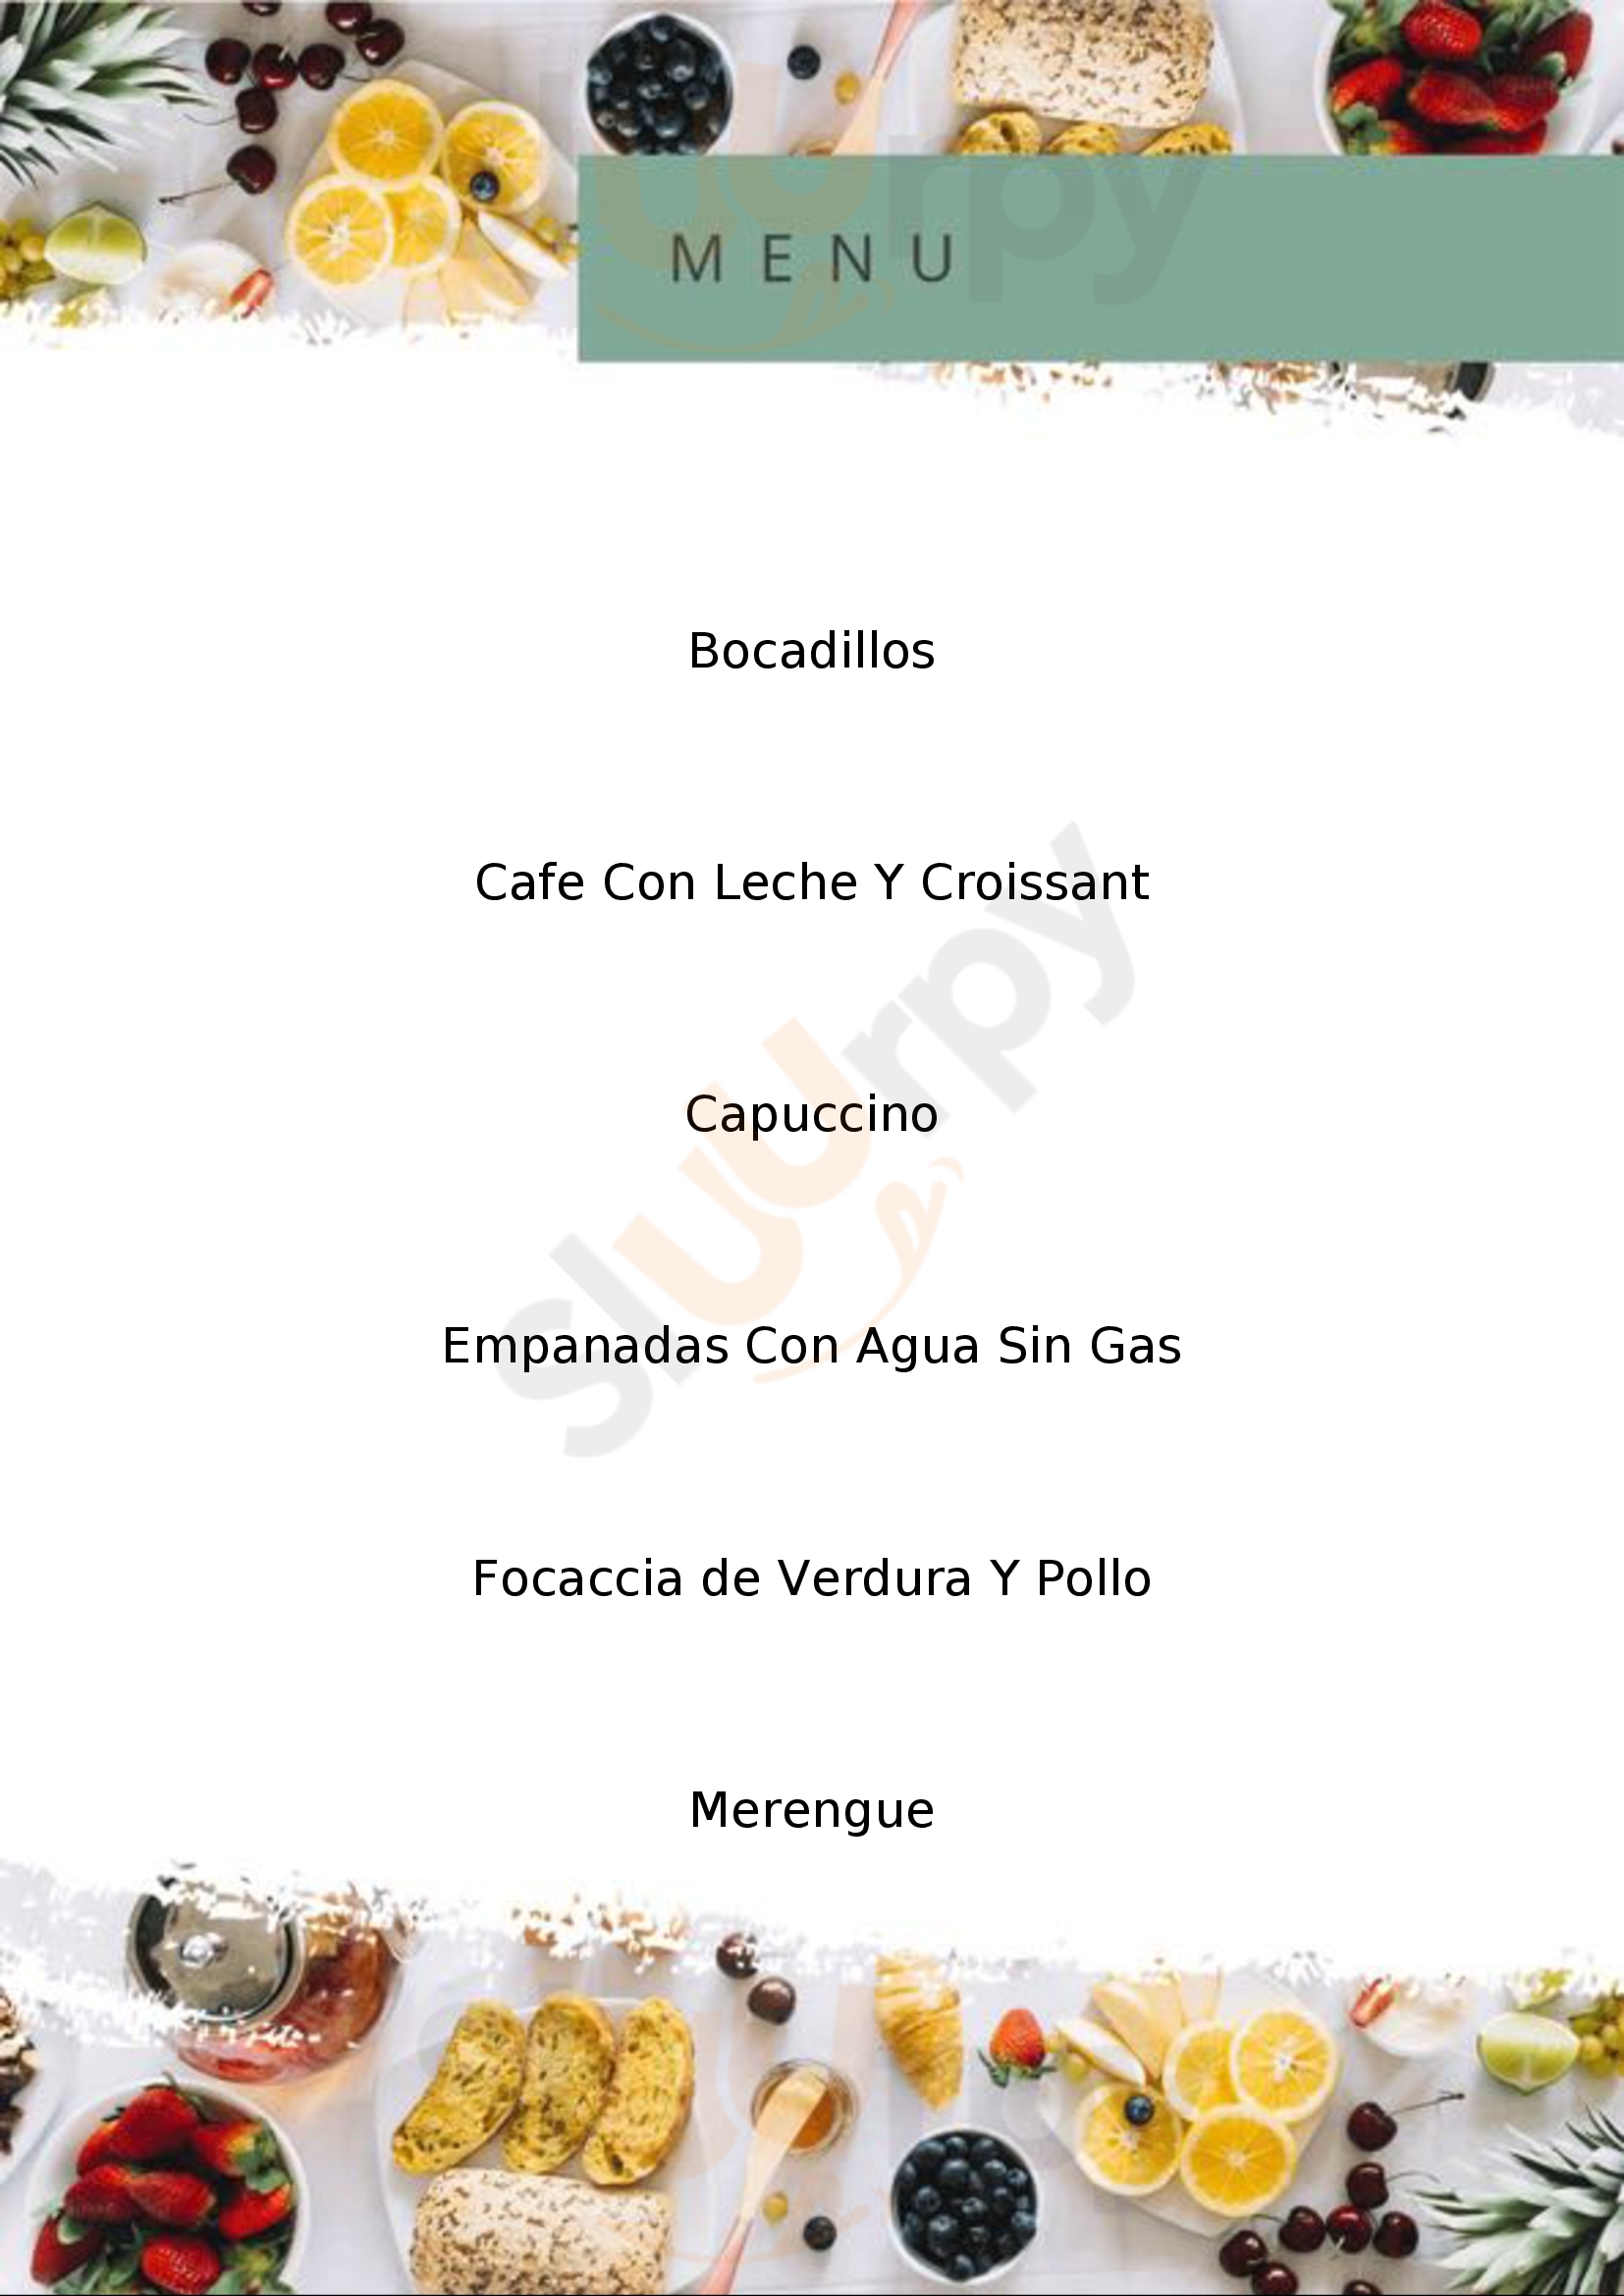 Panadería-cafetería Crustum Cerrajeria Sevilla Menu - 1